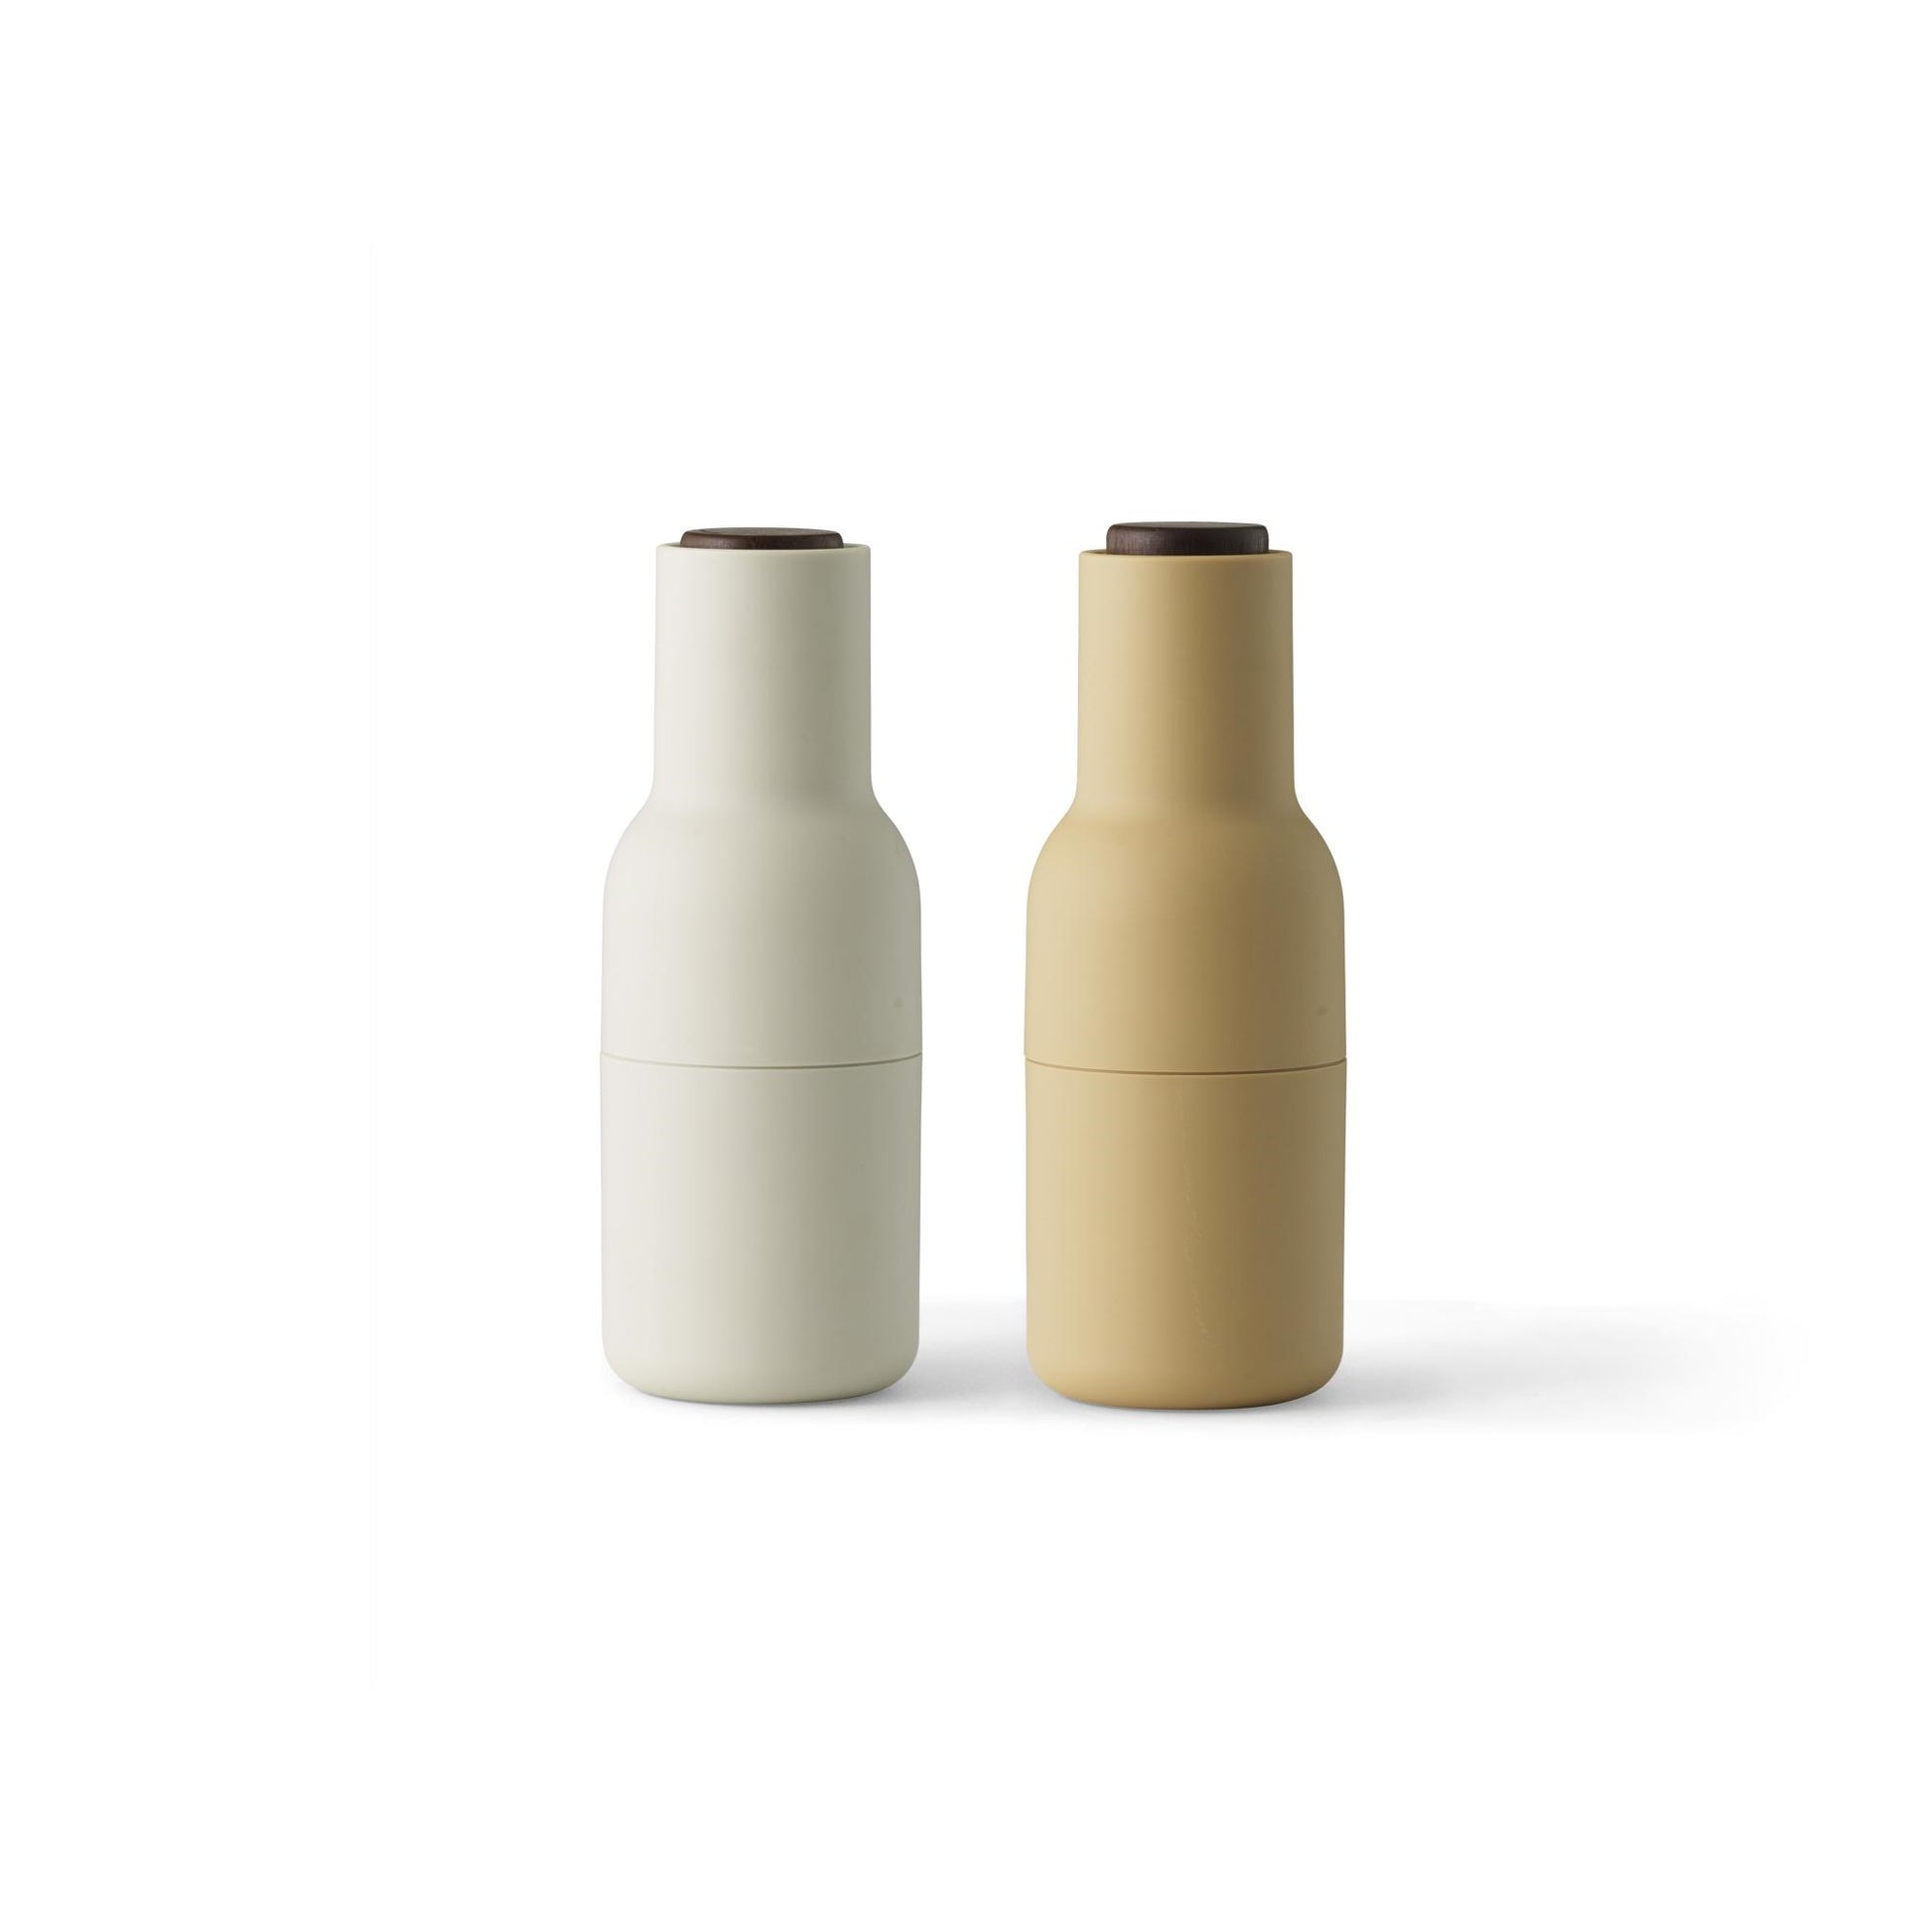 Bottle Grinder Set of 2 by Audo #Barley/ Walnut